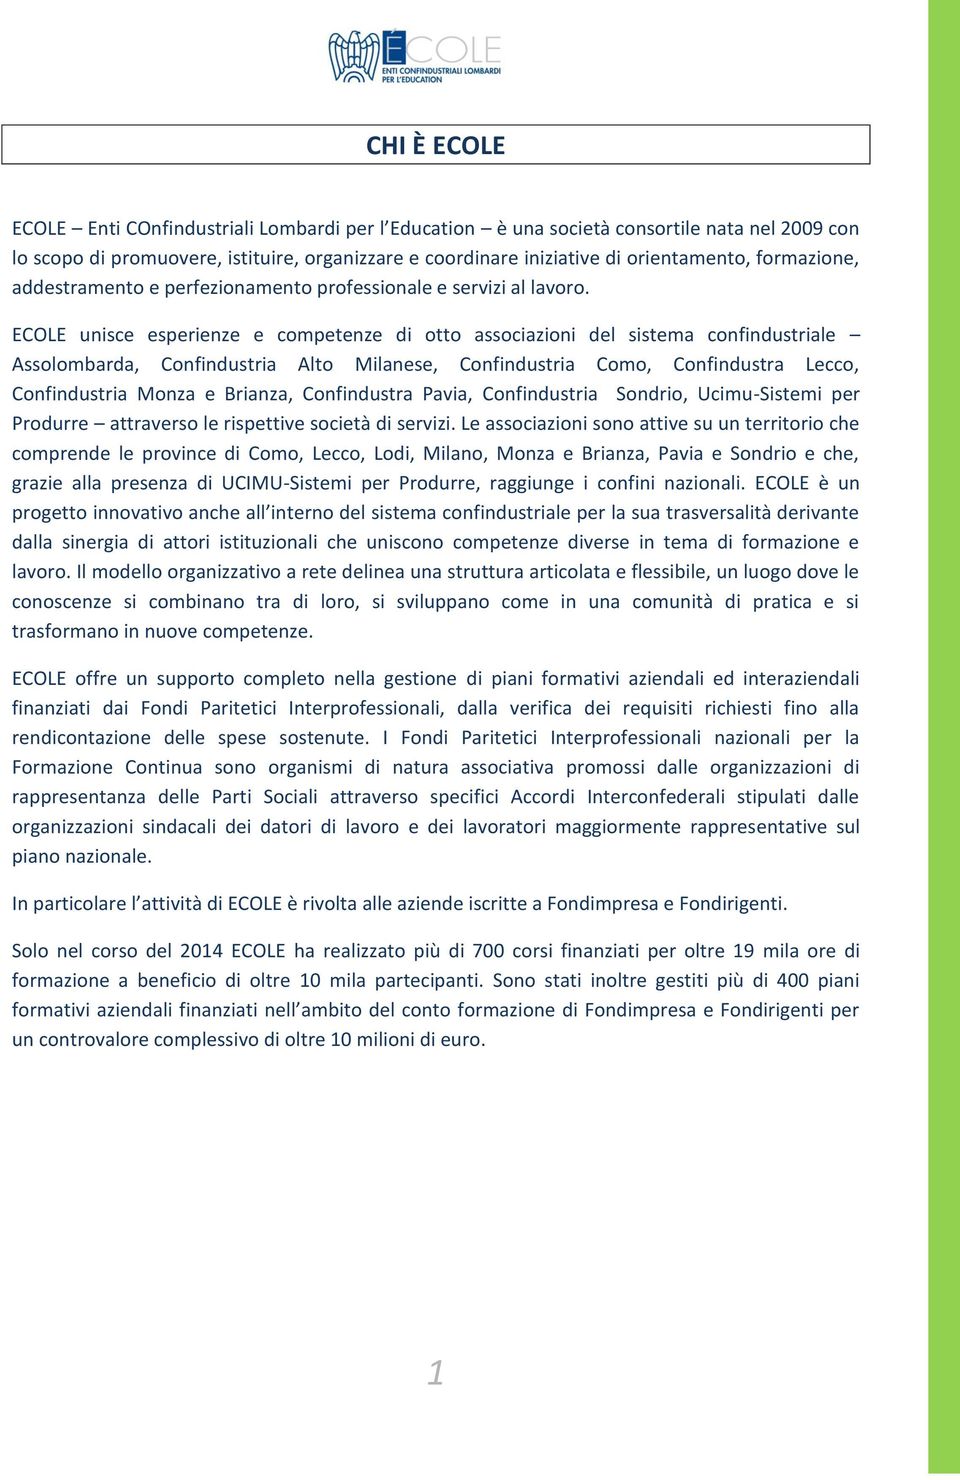 ECOLE unisce esperienze e competenze di otto associazioni del sistema confindustriale Assolombarda, Confindustria Alto Milanese, Confindustria Como, Confindustra Lecco, Confindustria Monza e Brianza,